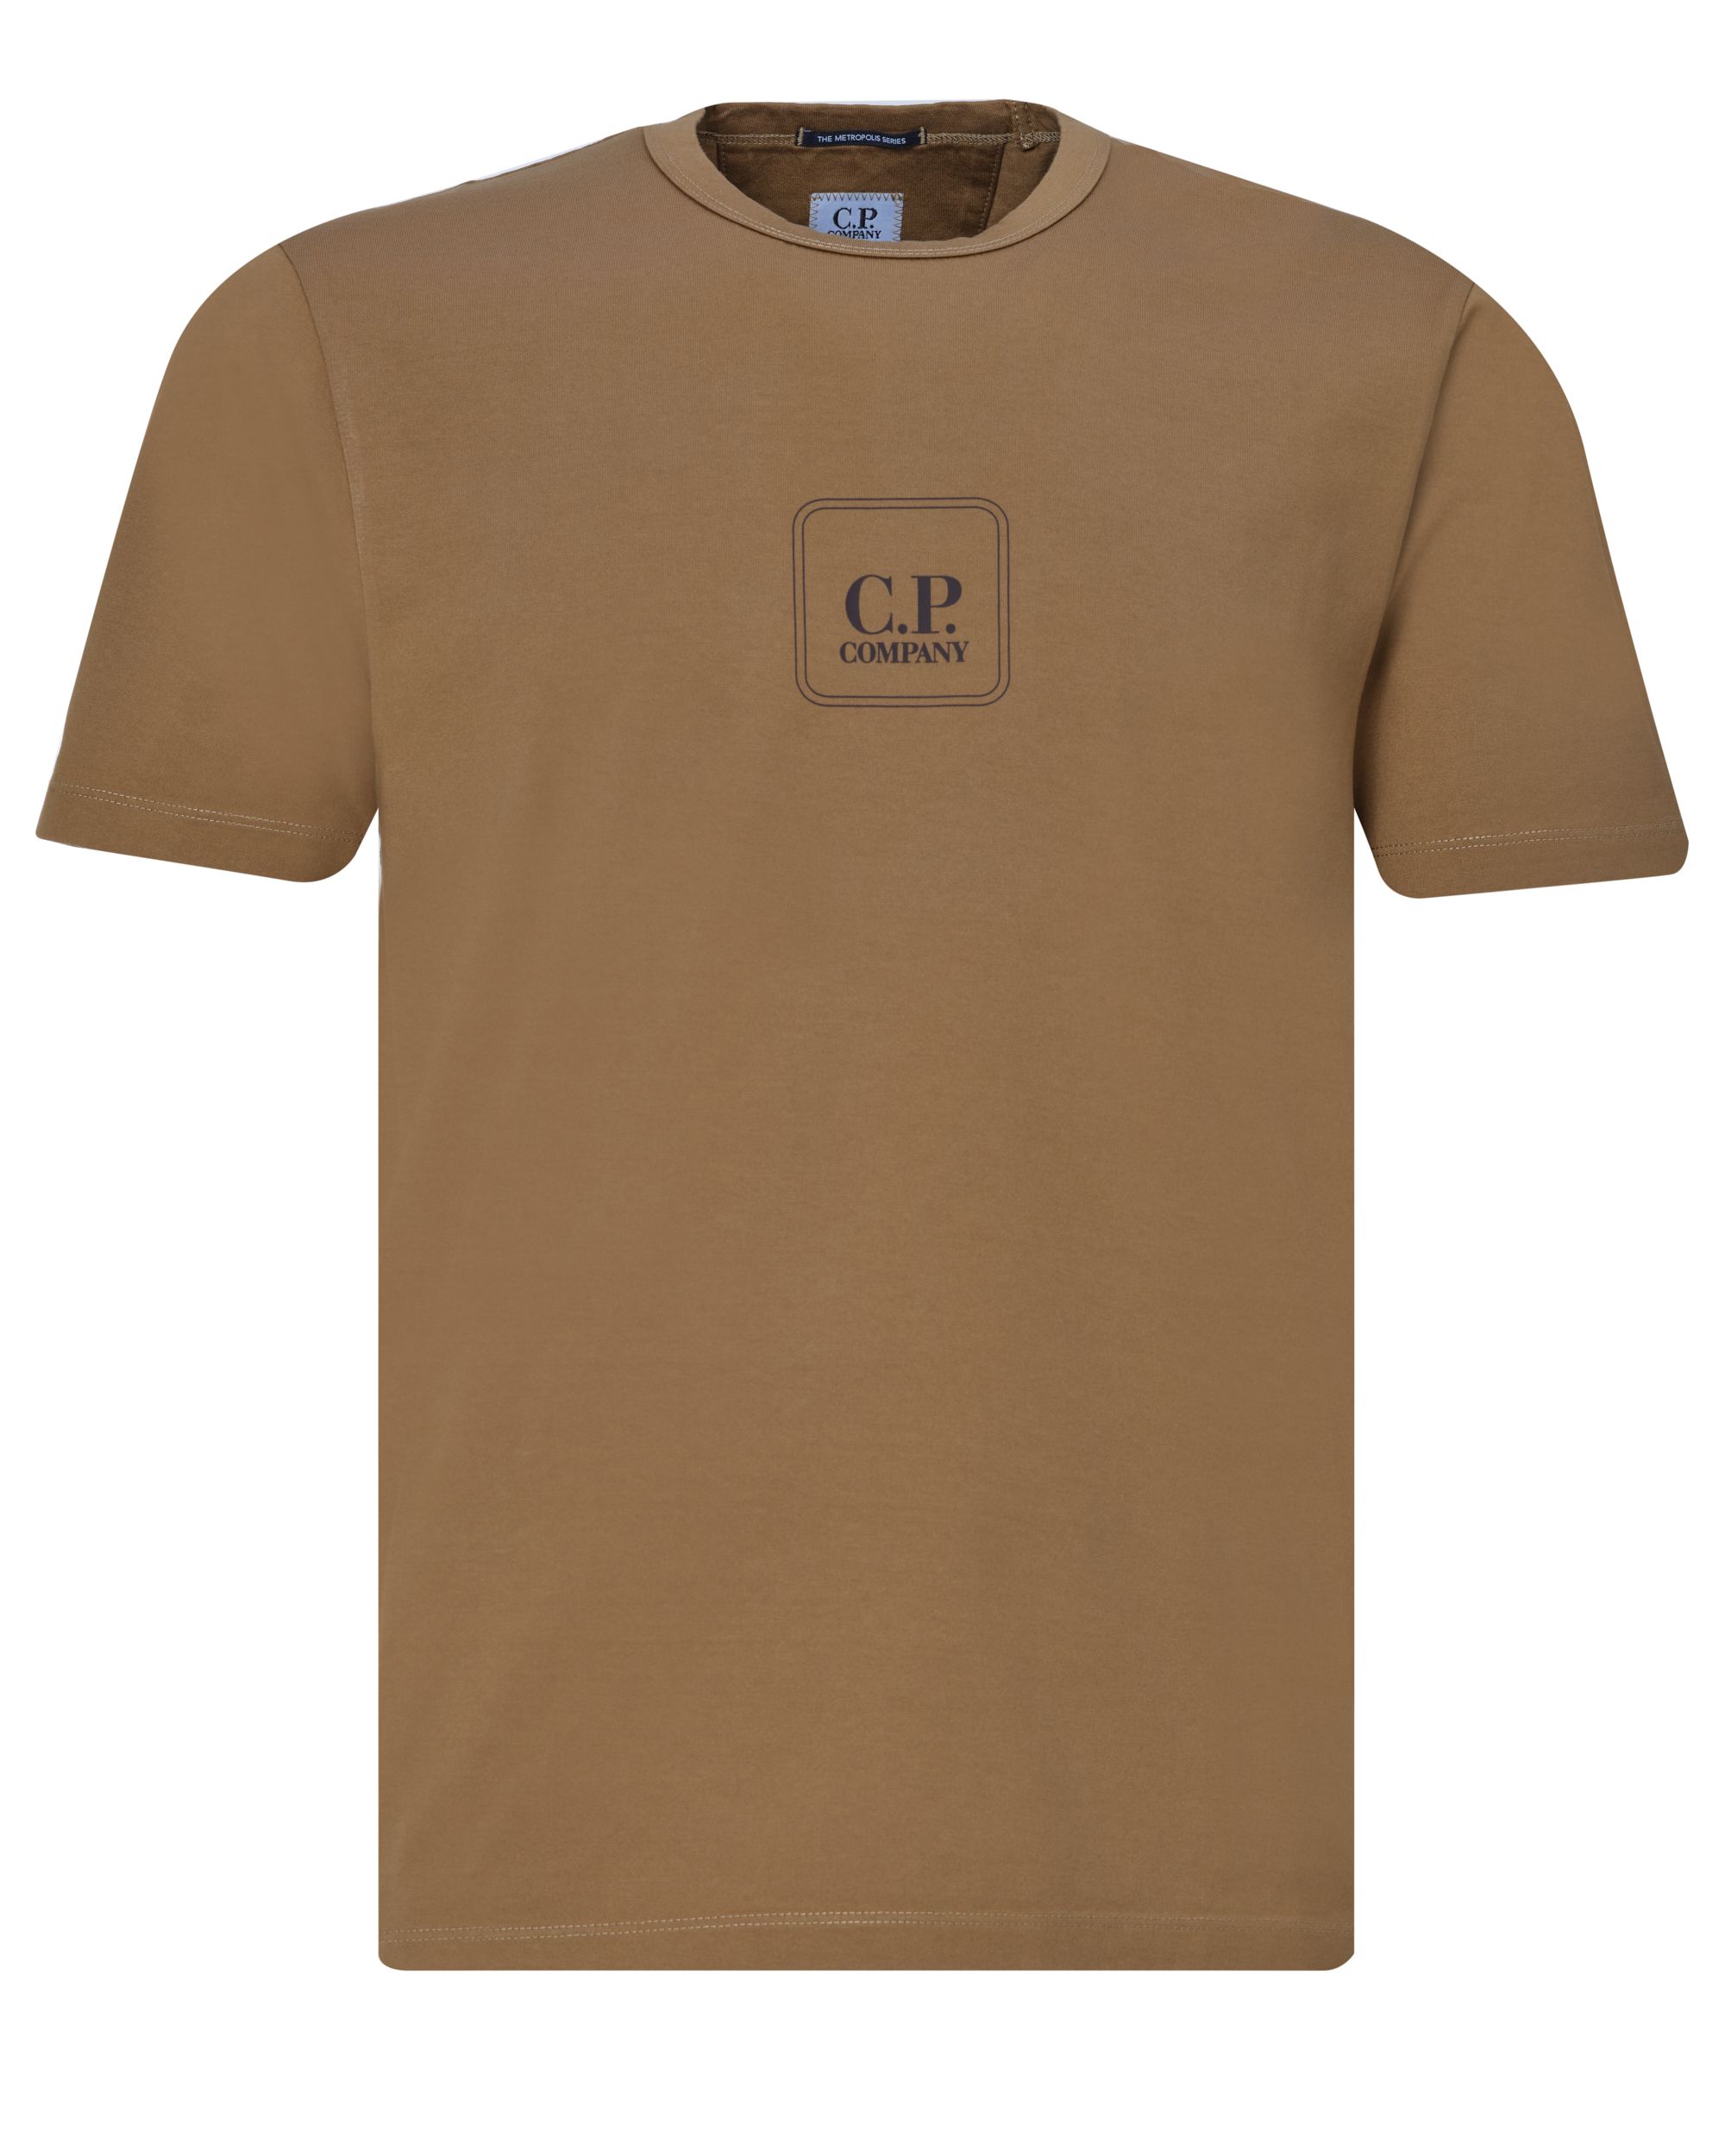 C.P Company T-shirt KM Khaki 078936-002-L